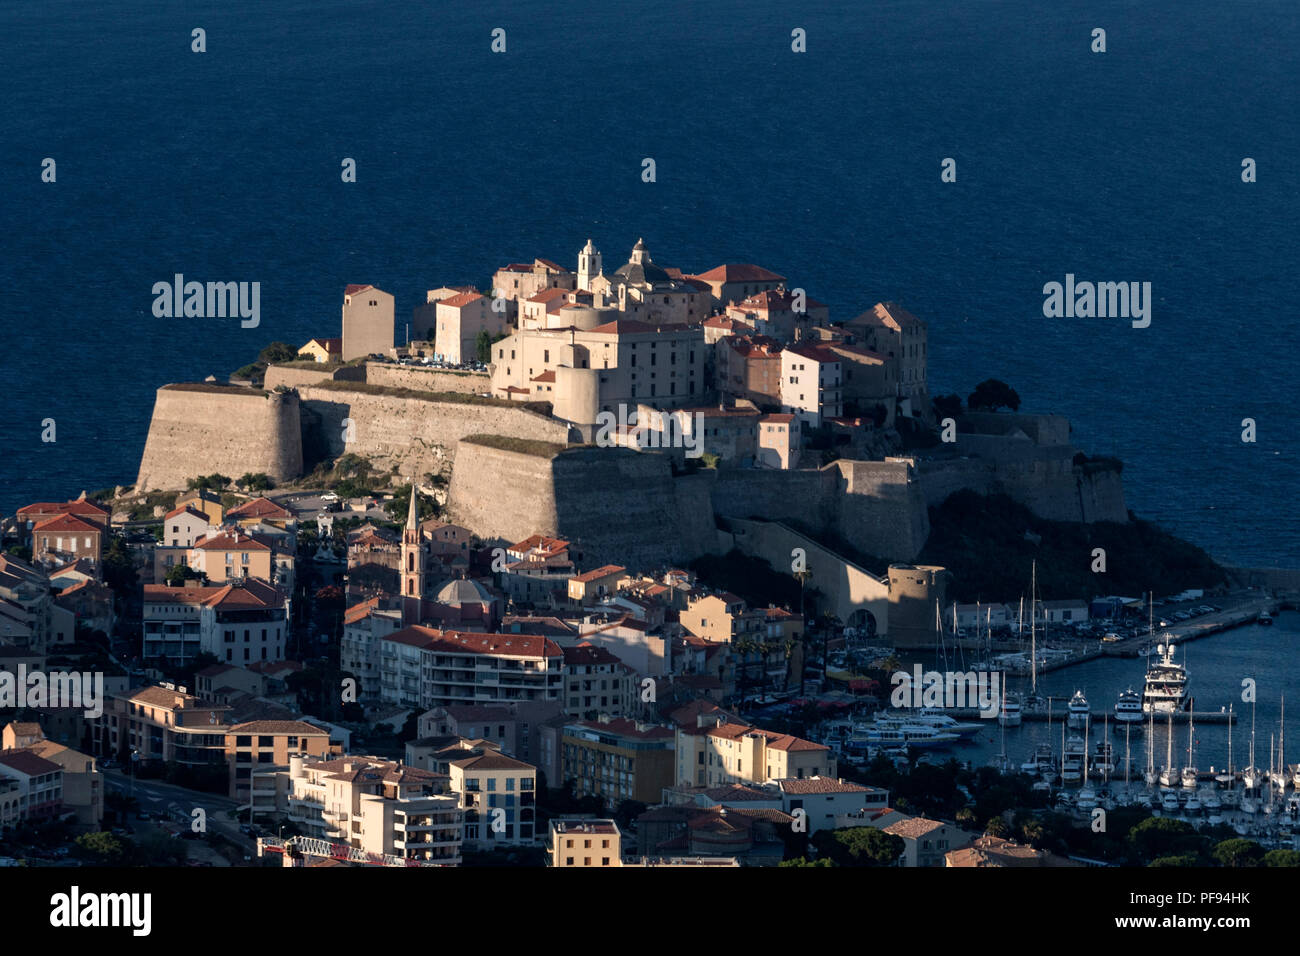 Am späten Abend Sonnenlicht getaucht, ist die Zitadelle von Calvi thront auf einem Felsen mit Blick auf die Altstadt von Calvi Calvi Bucht an der Nordwestküste von Korsika Stockfoto